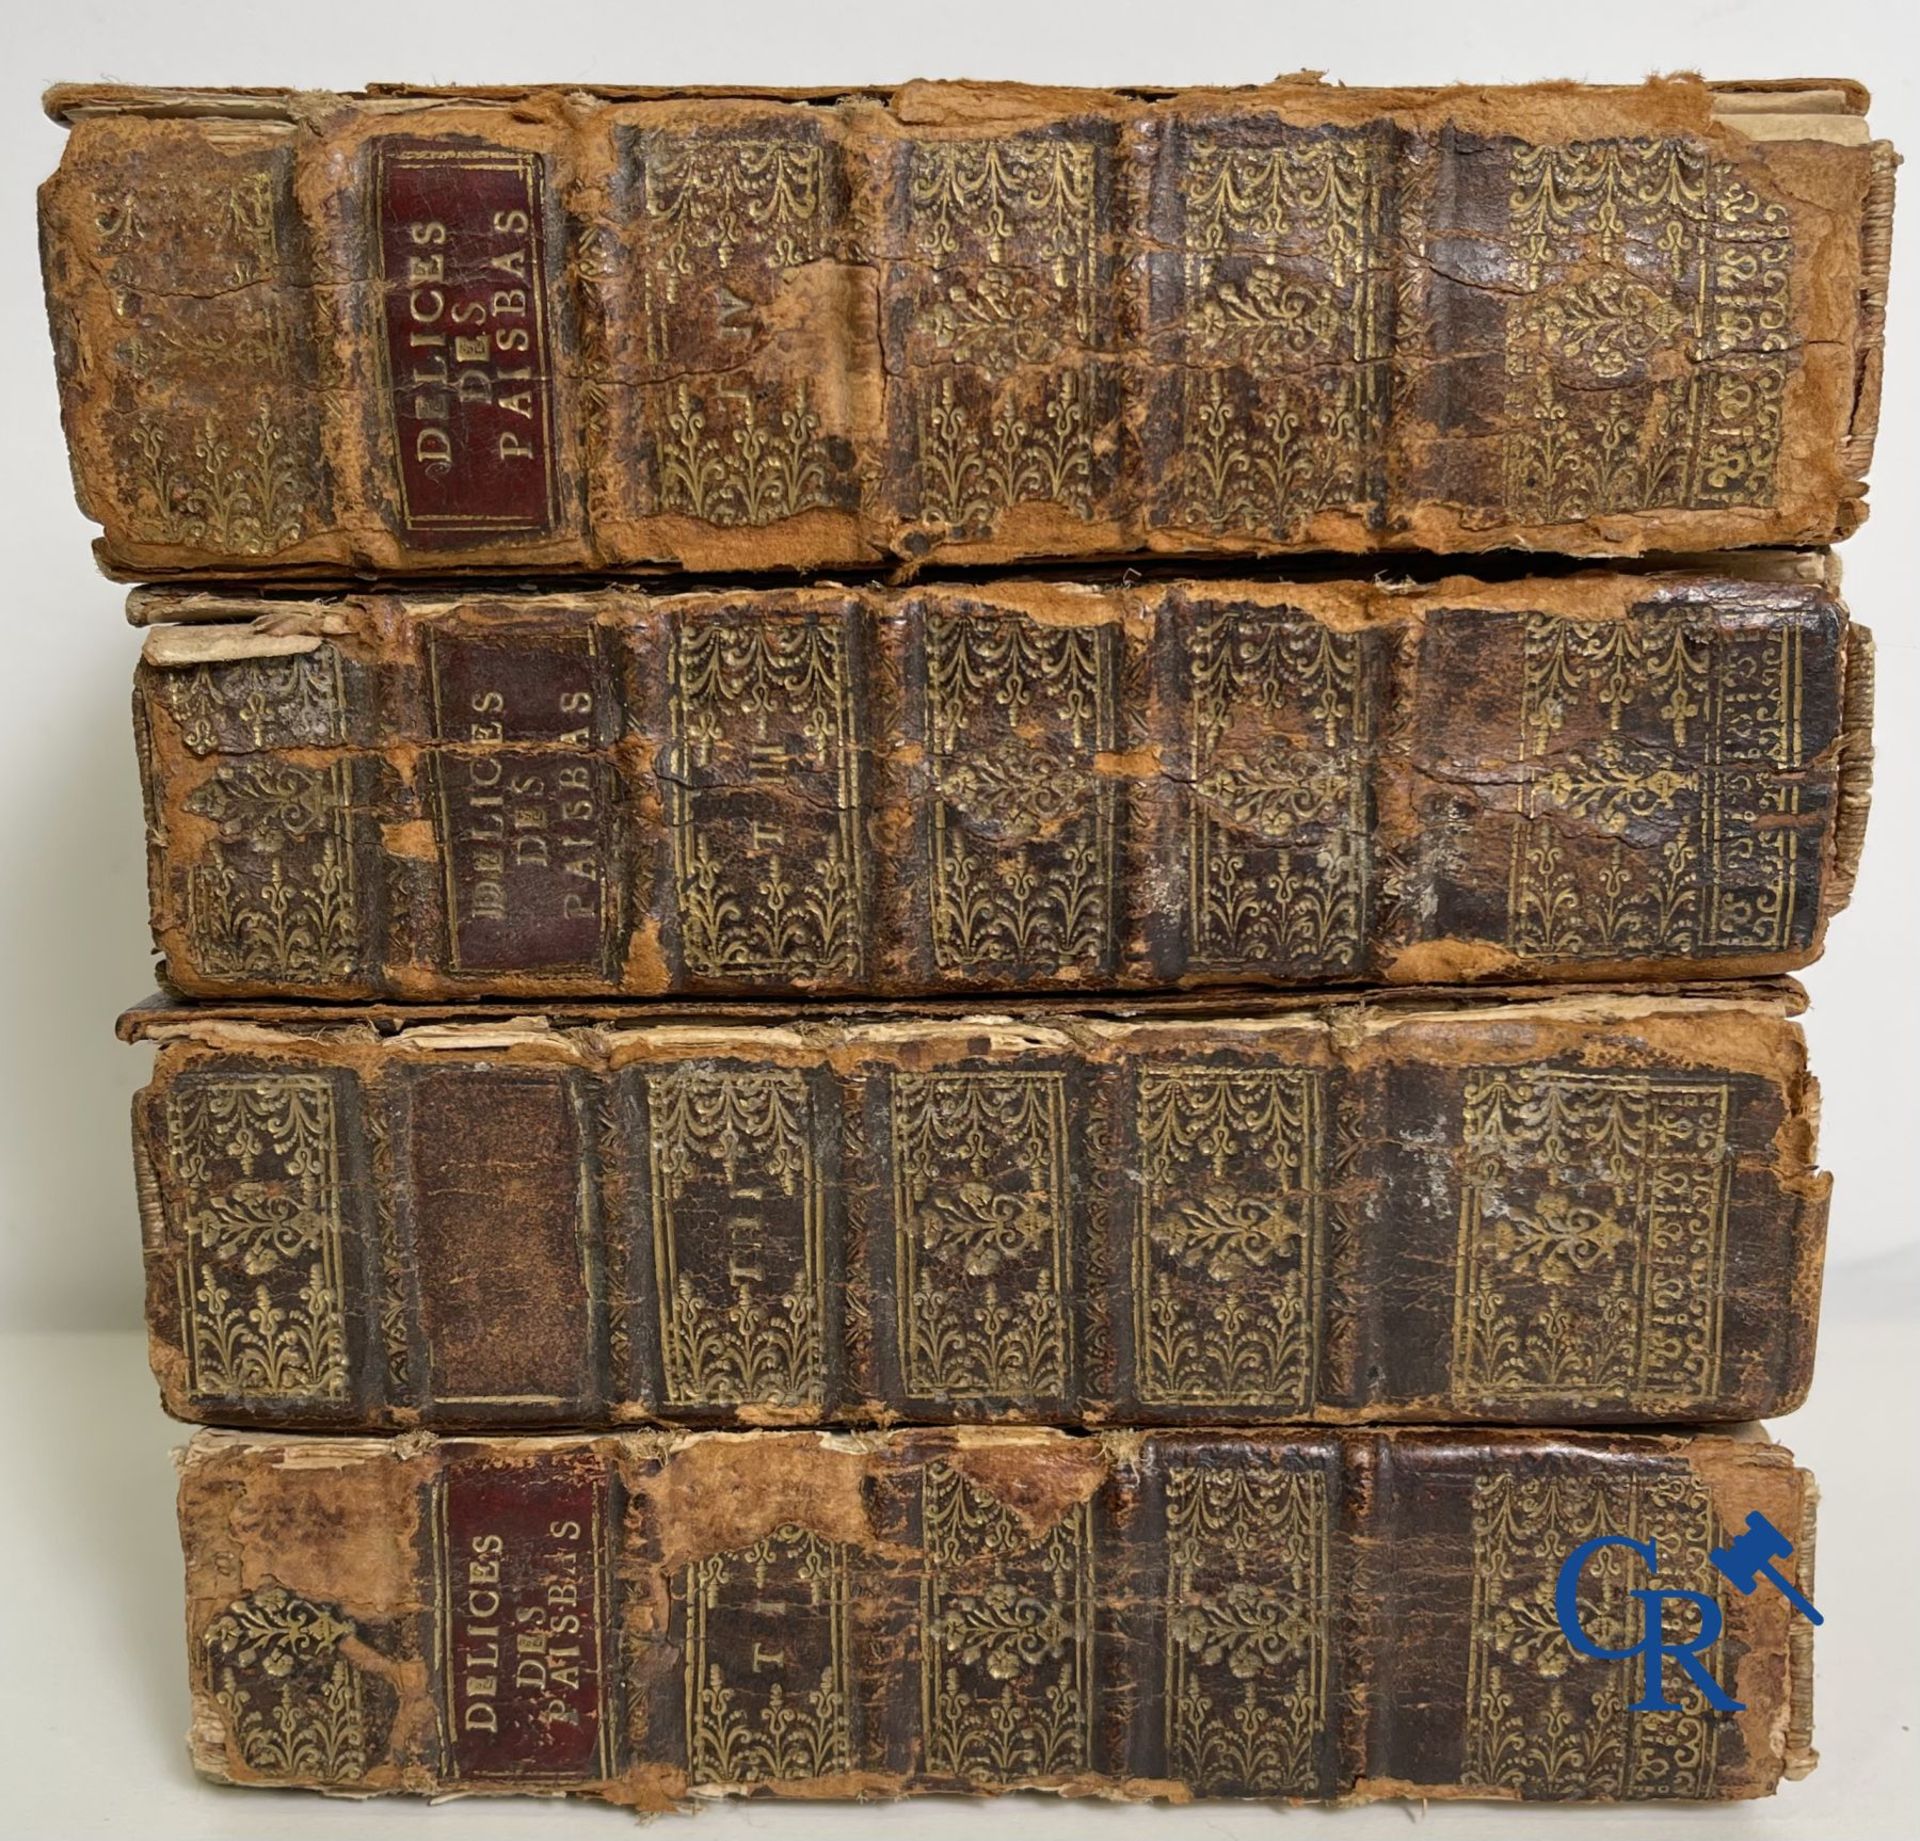 Early printed books: Histoire générale des Pais-Bas, 1720 Chez François Foppens à Brusselle. - Image 5 of 23